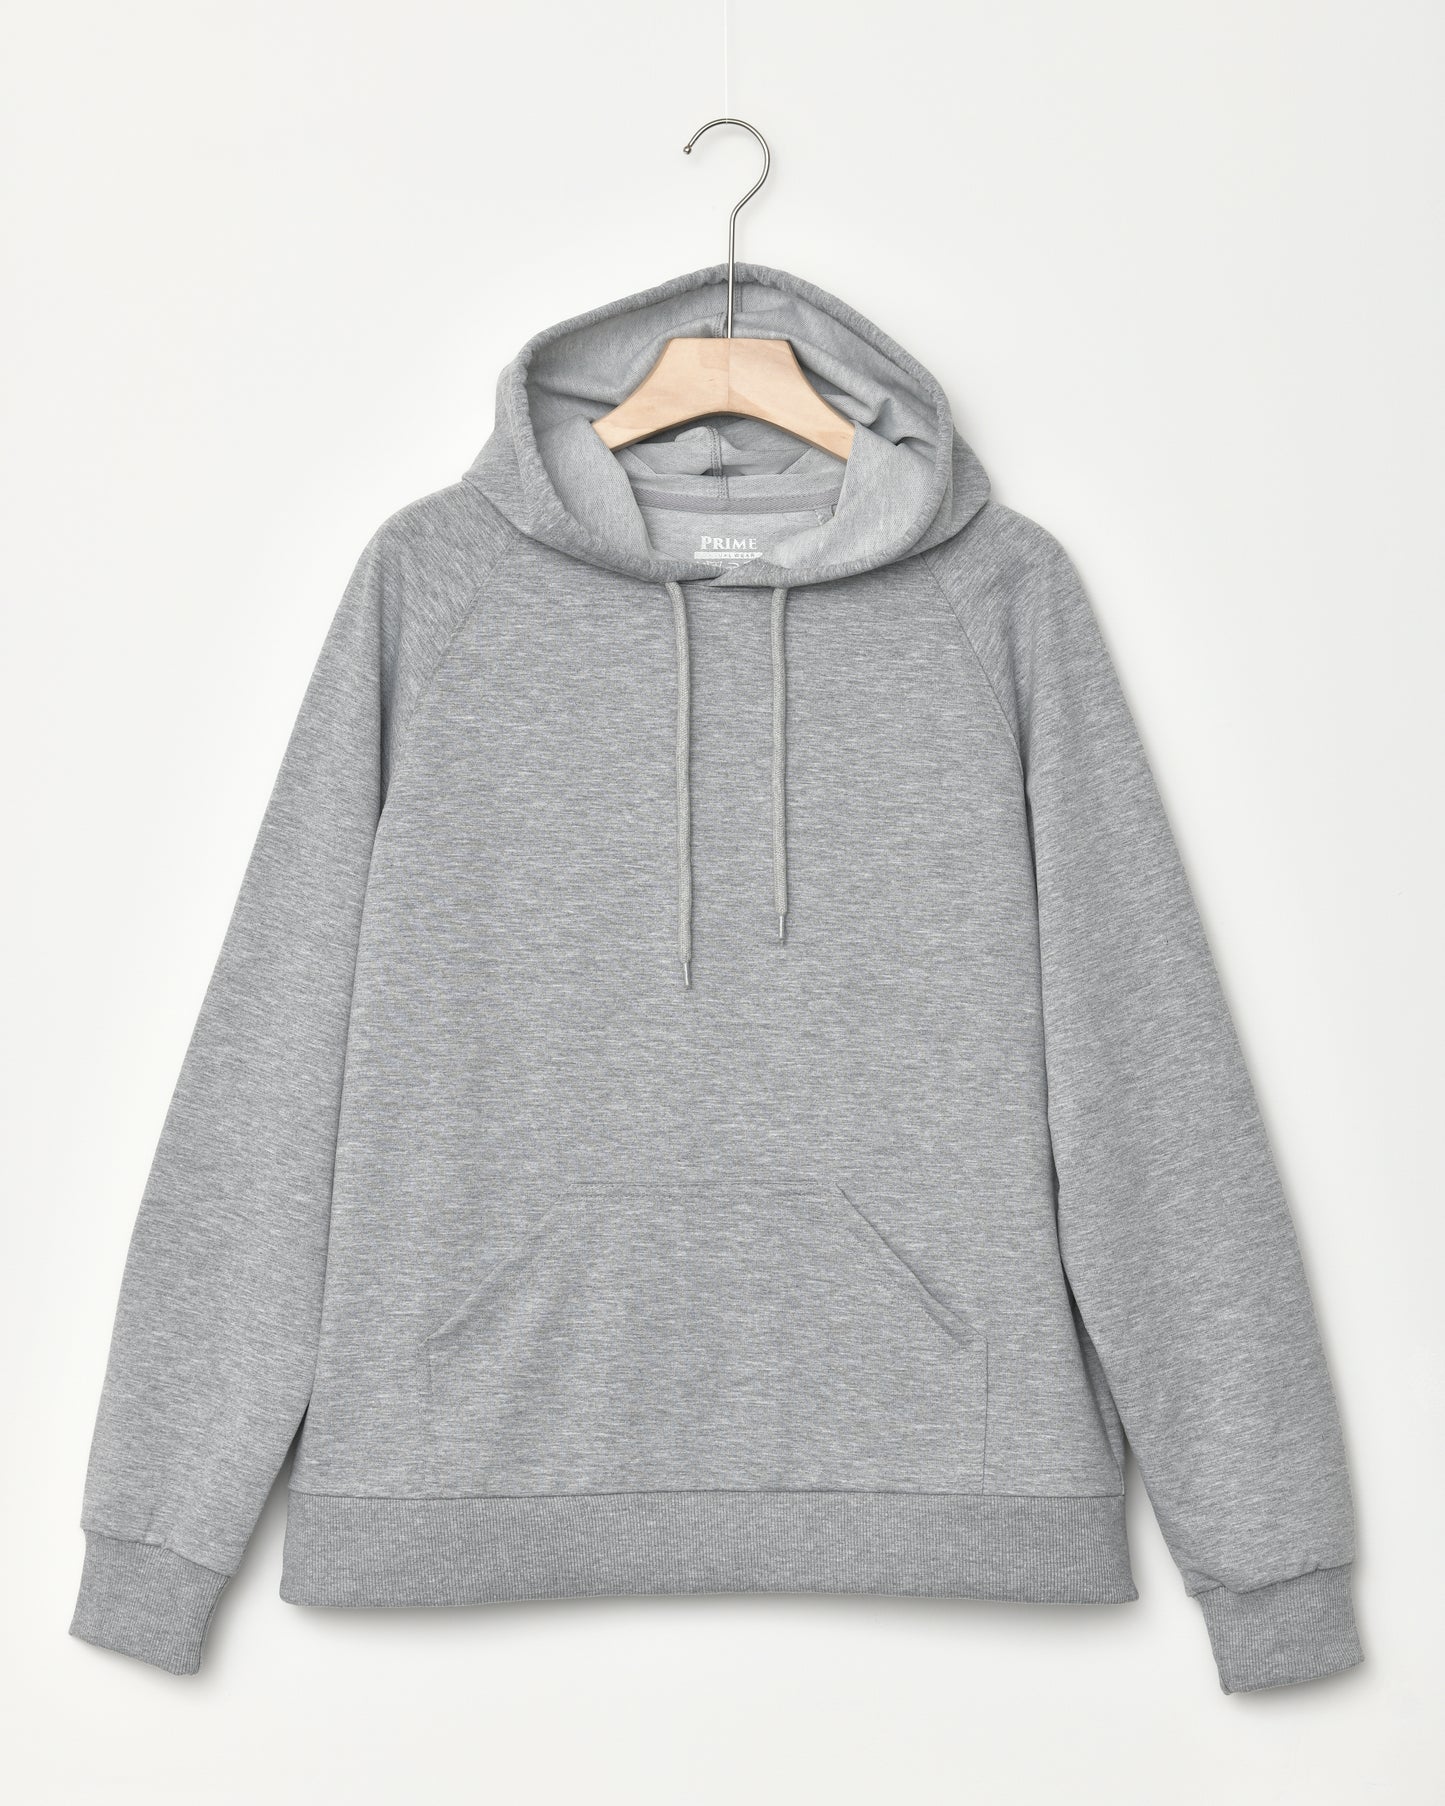 Simple hoodie